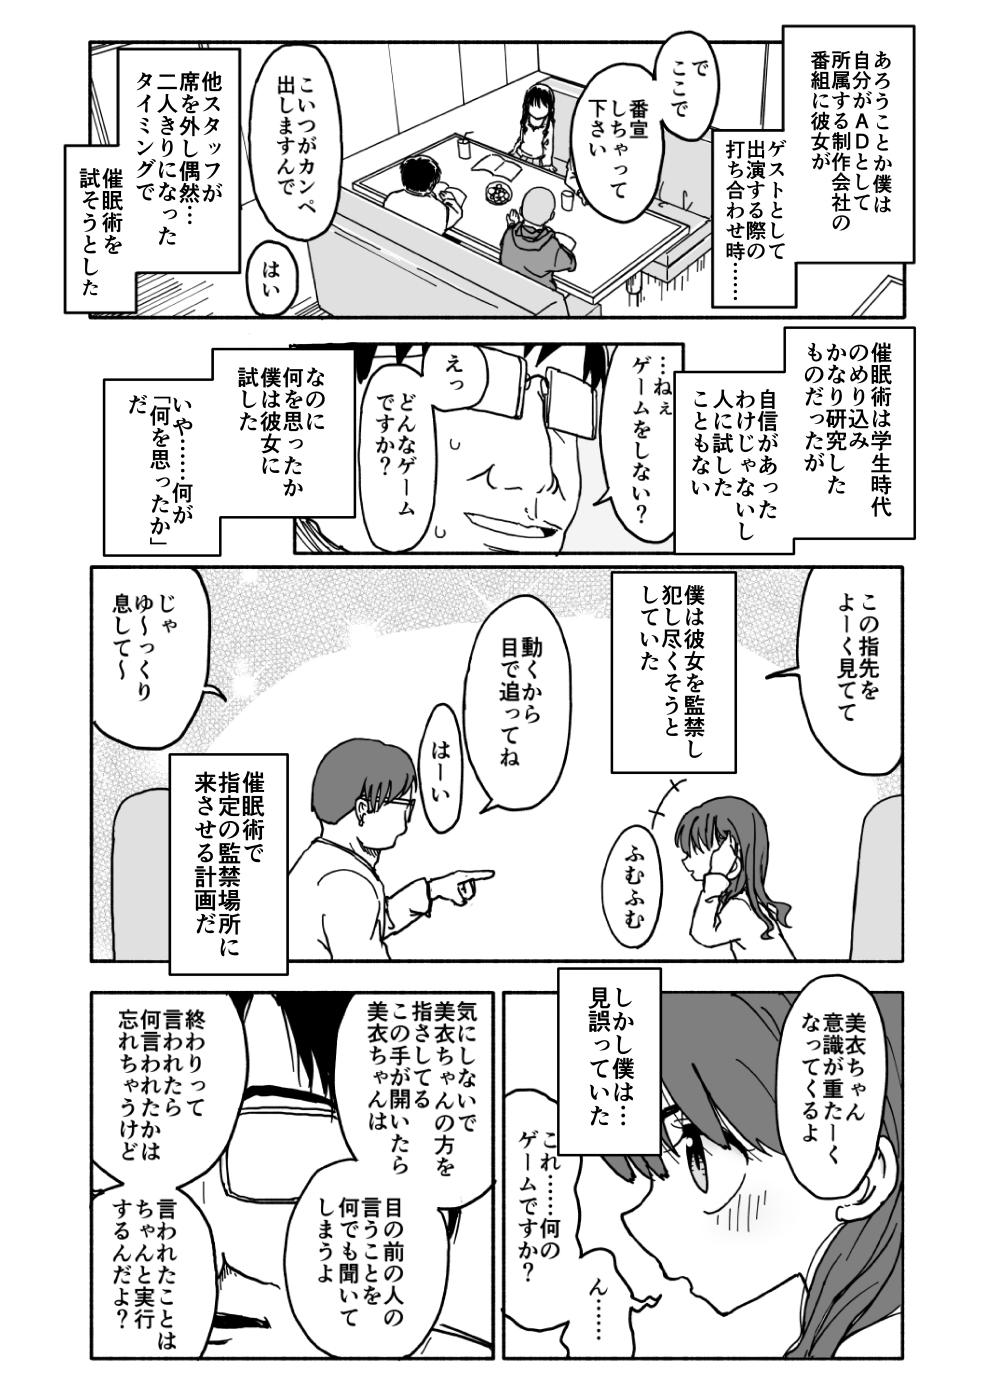 Okashi Tsukuri Idol ☆ Gimi ! Ecchi na Himitsu no Tokkun manga 7